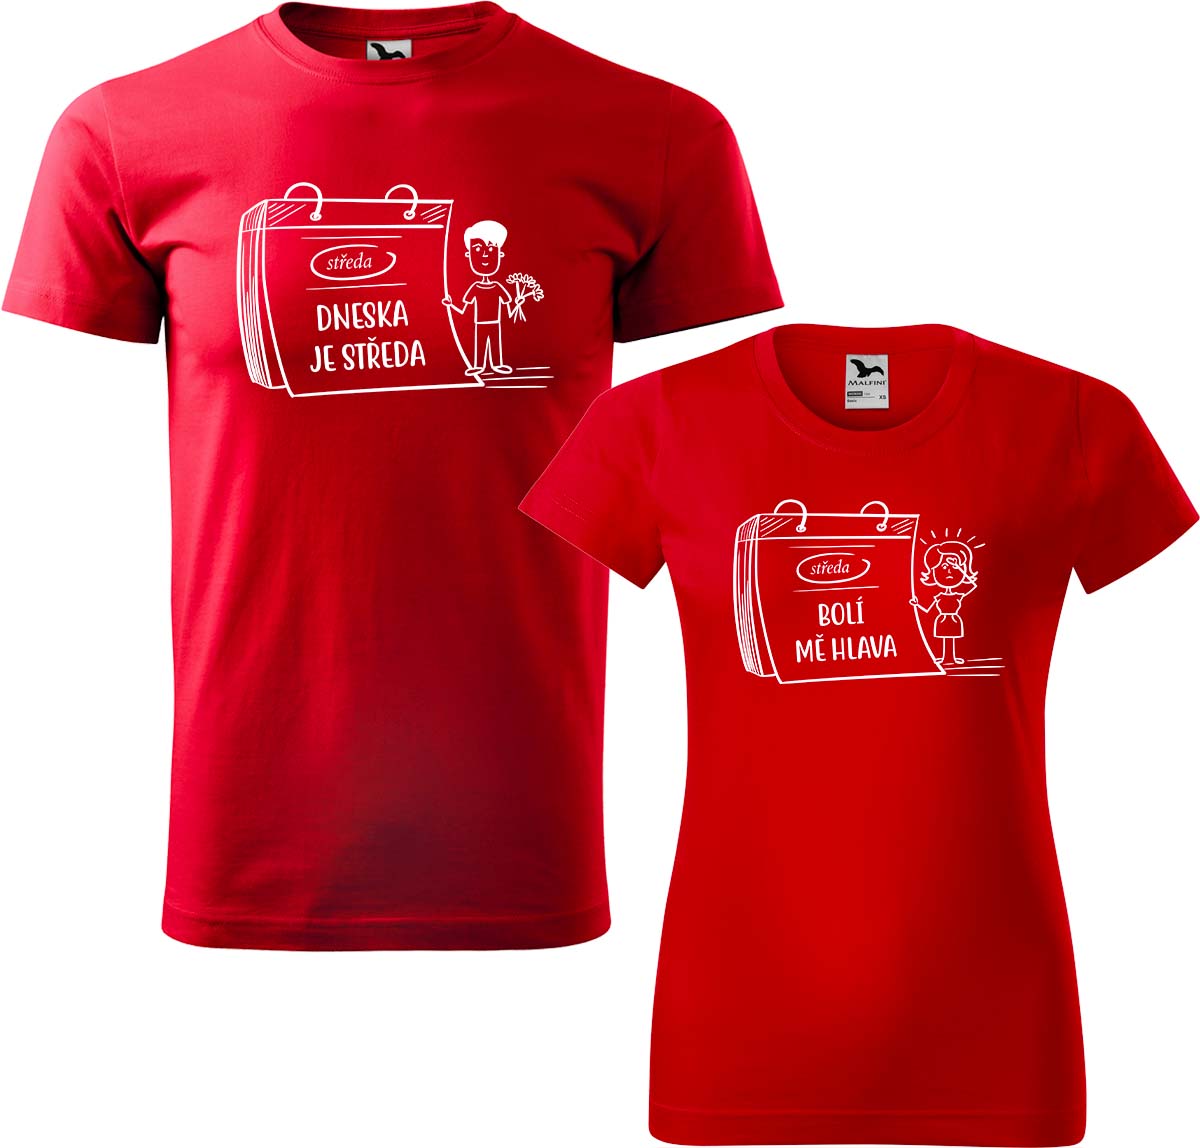 Trička pro páry - Dneska je středa Barva: Červená (07), Velikost dámské tričko: S, Velikost pánské tričko: S